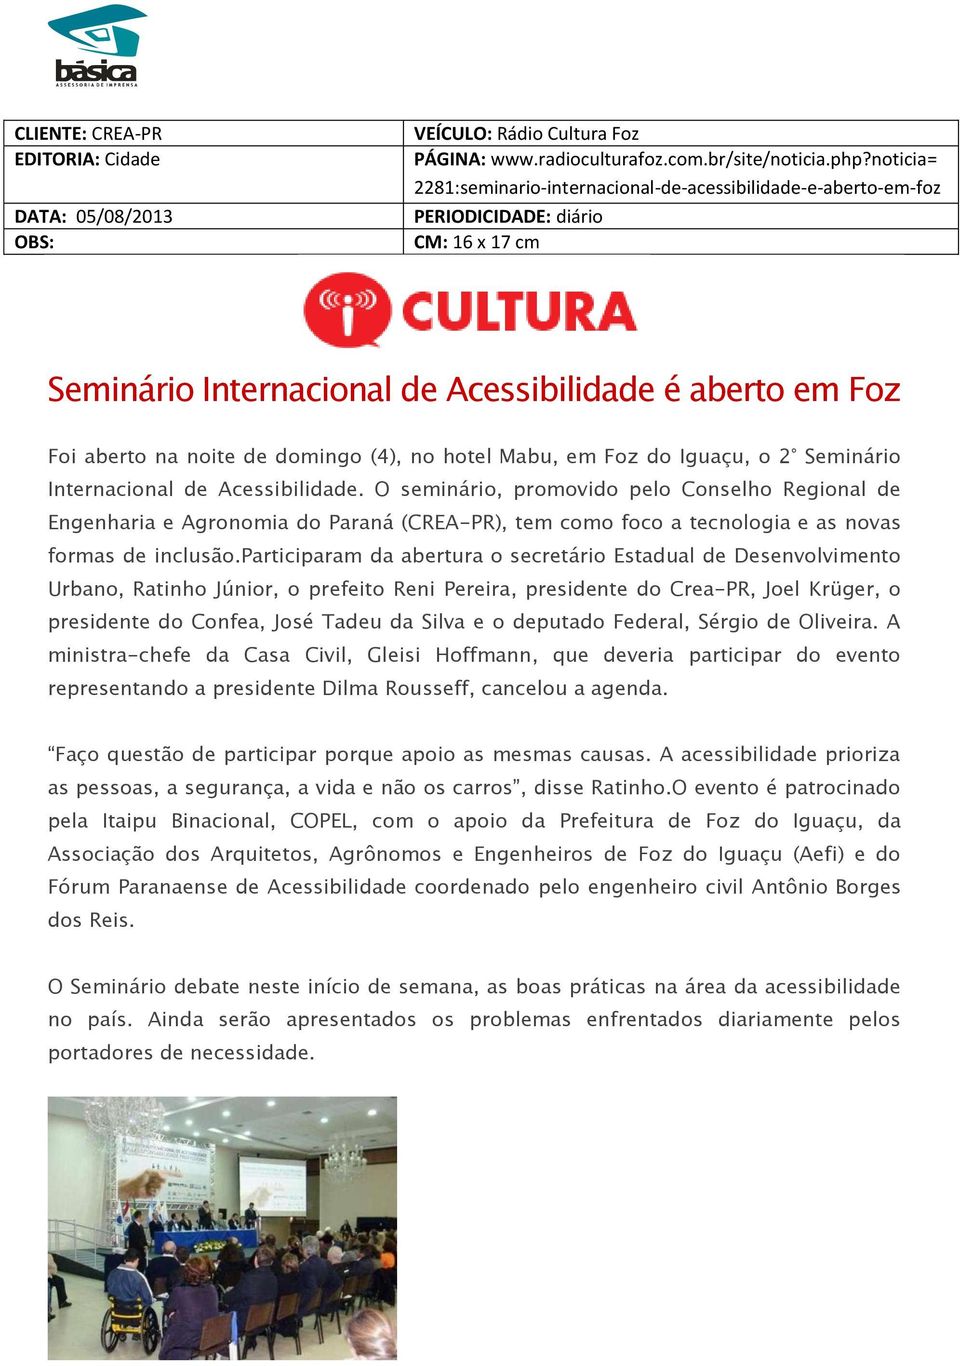 Foz do Iguaçu, o 2 Seminário Internacional de Acessibilidade.